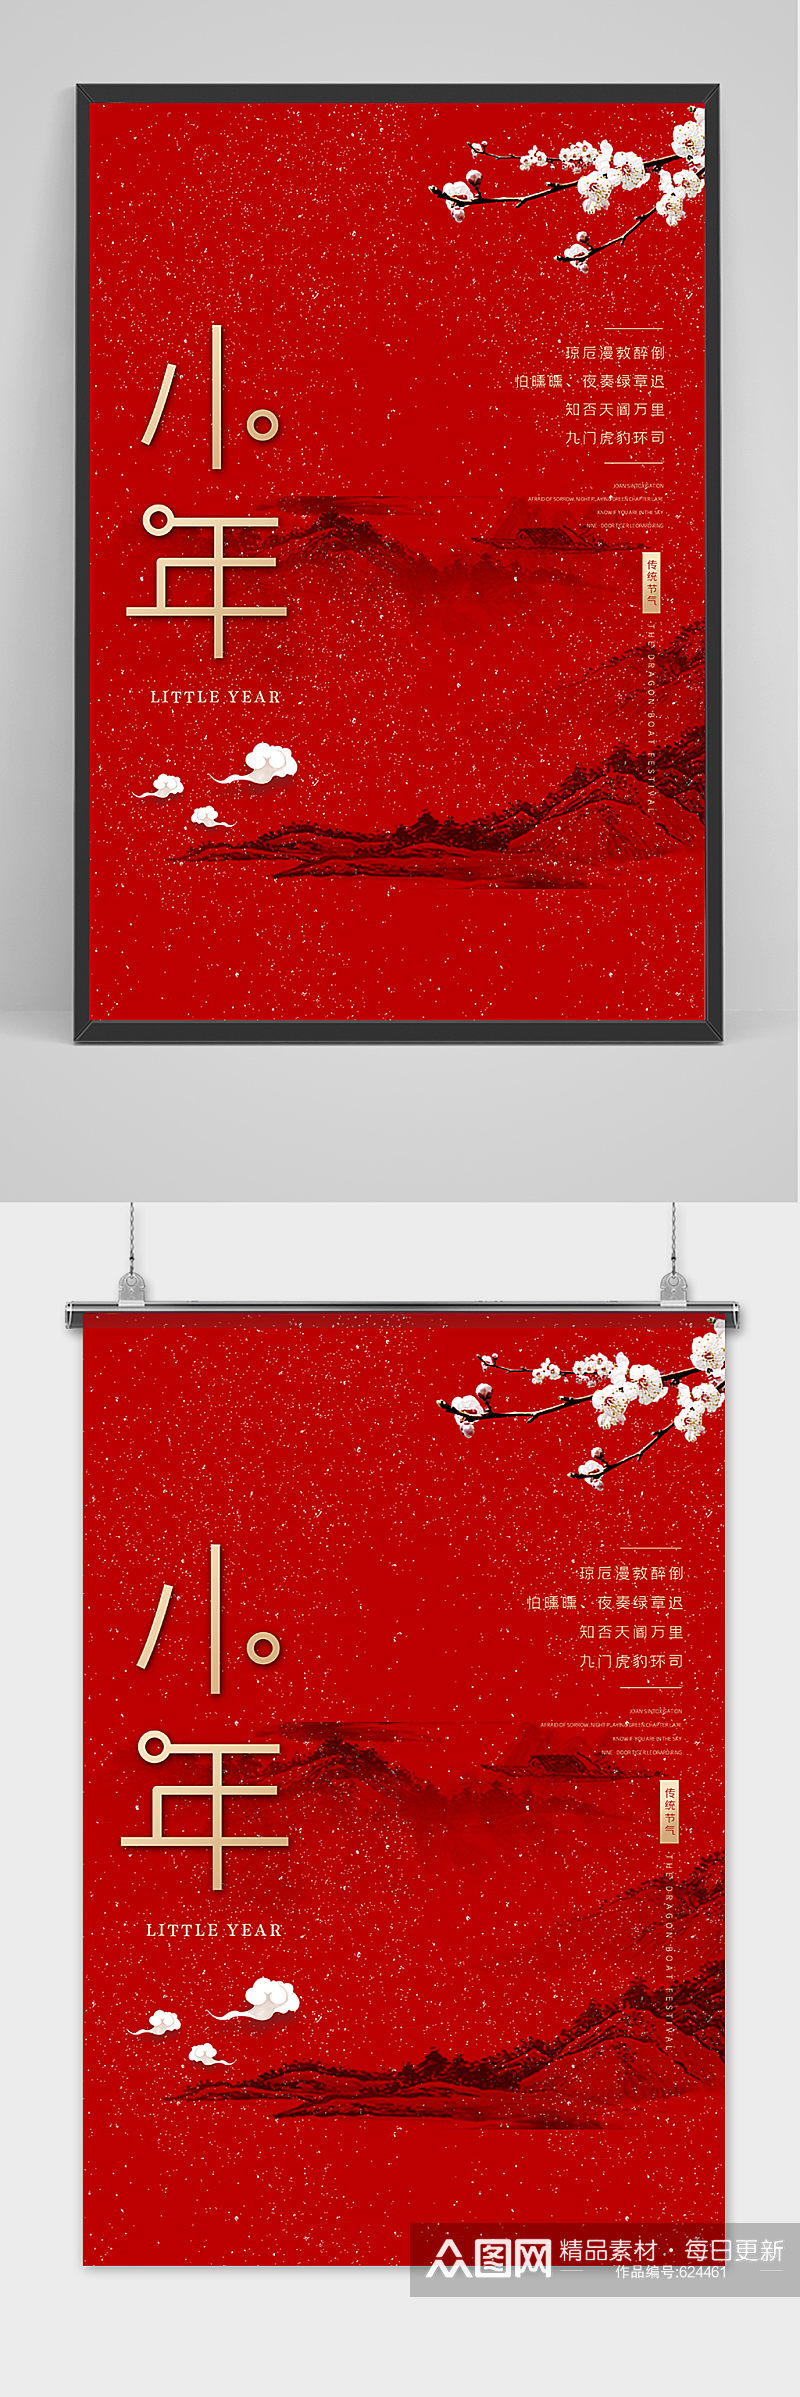 红色清新文艺风格小年节日海报素材